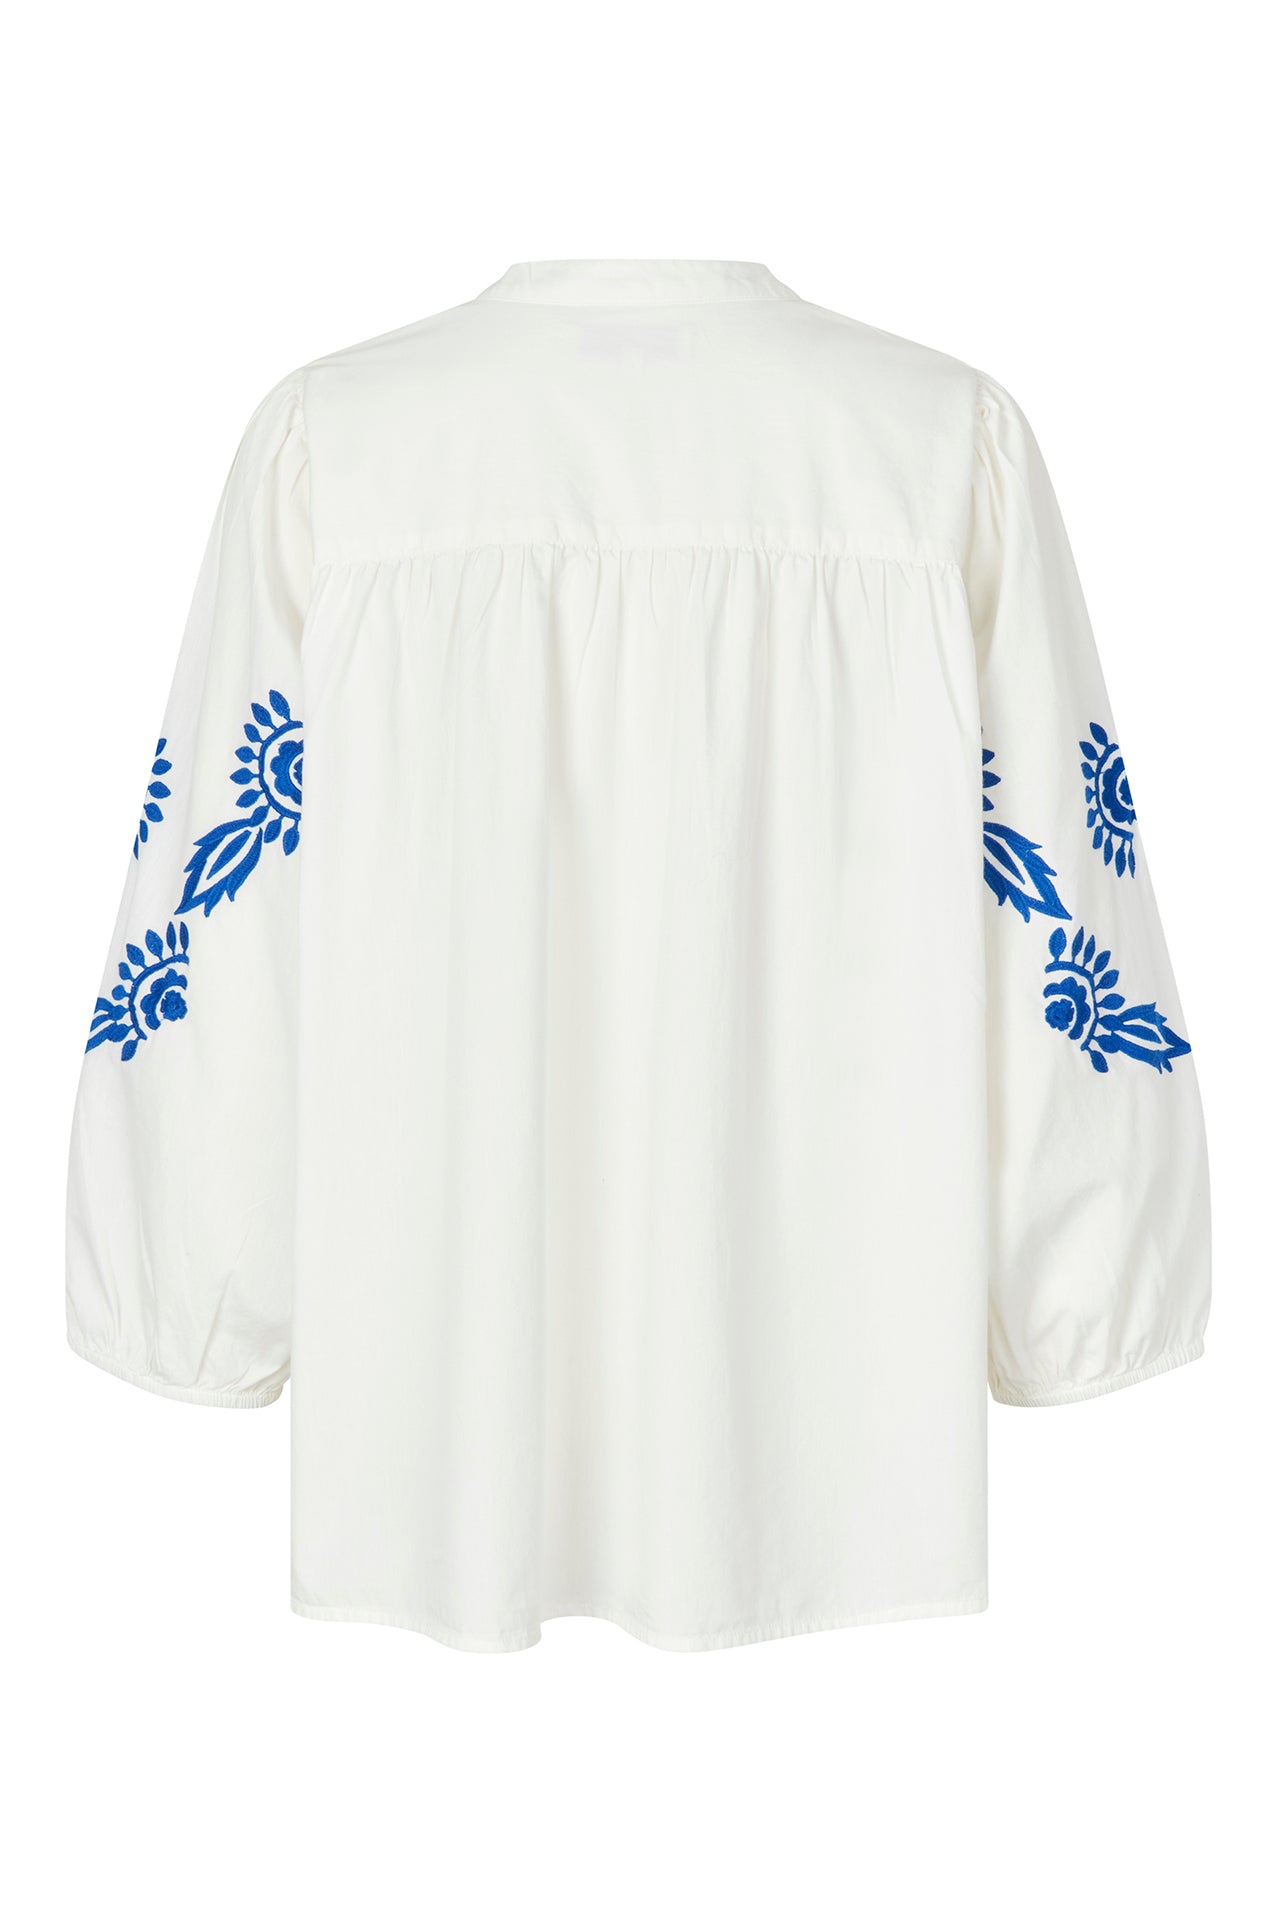 Lollys Laundry FaithLL Blouse LS Shirt 01 White